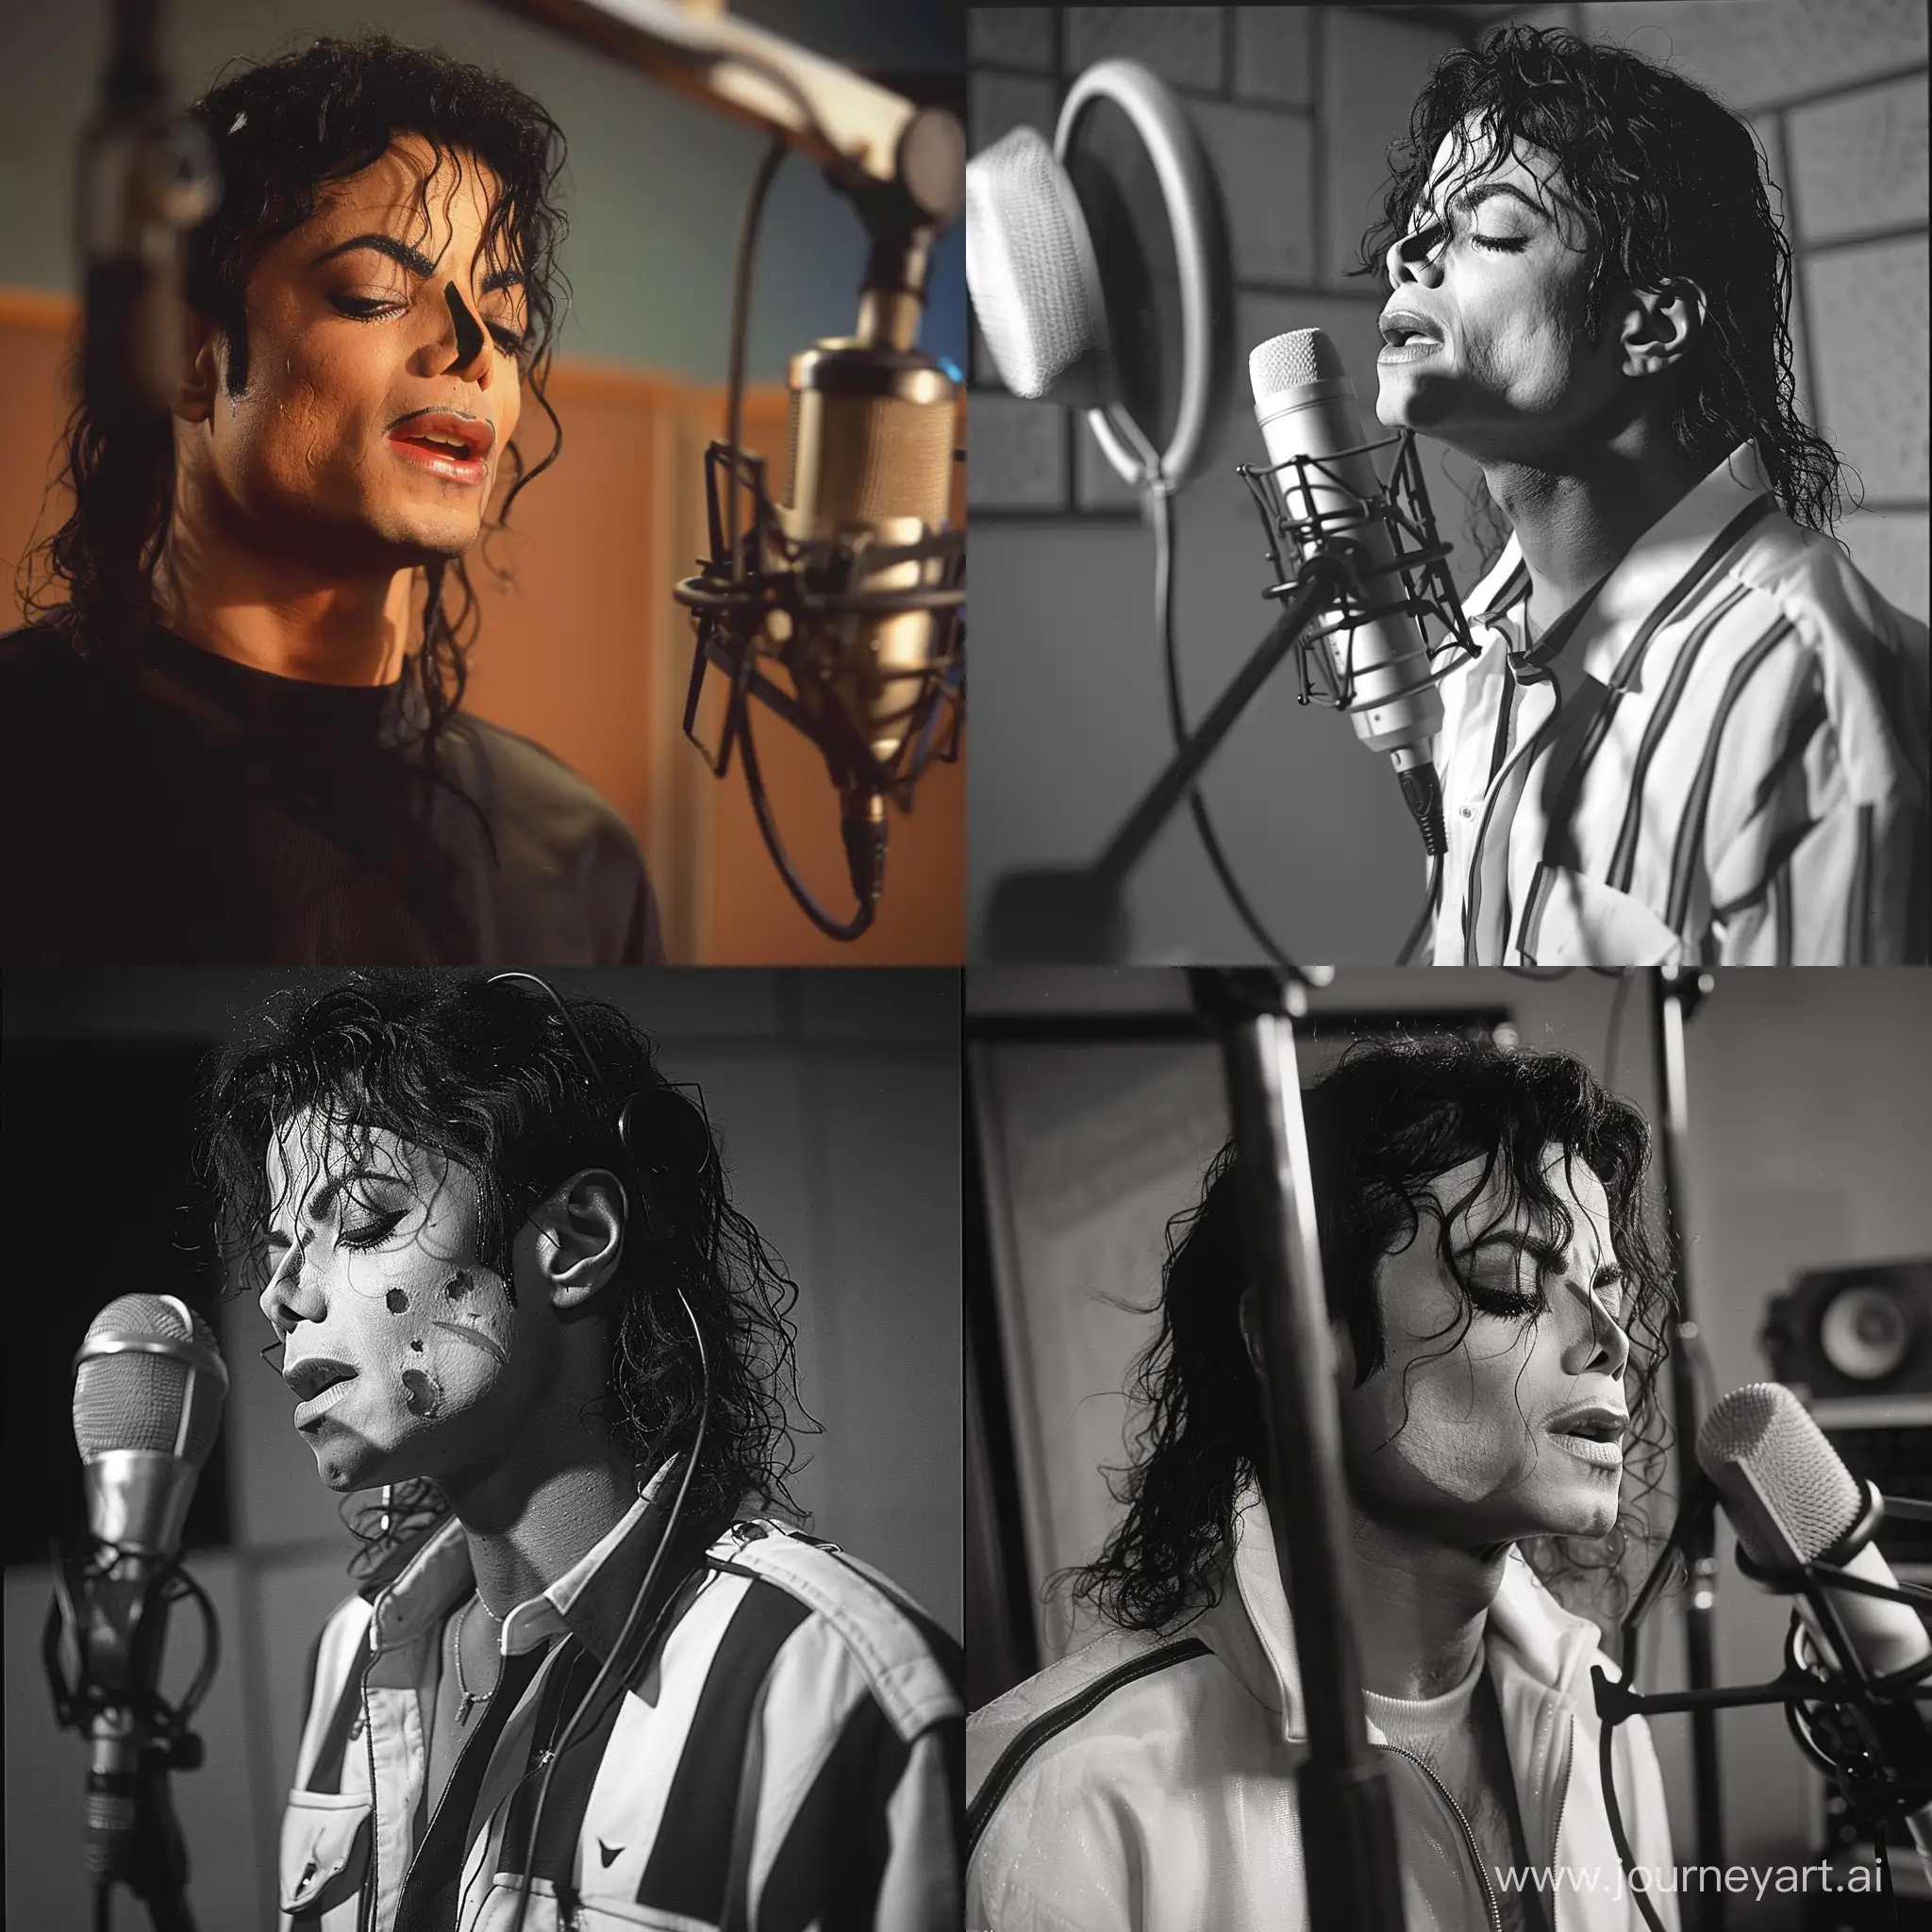 Michael-Jackson-Capturing-Musical-Magic-in-Studio-Session